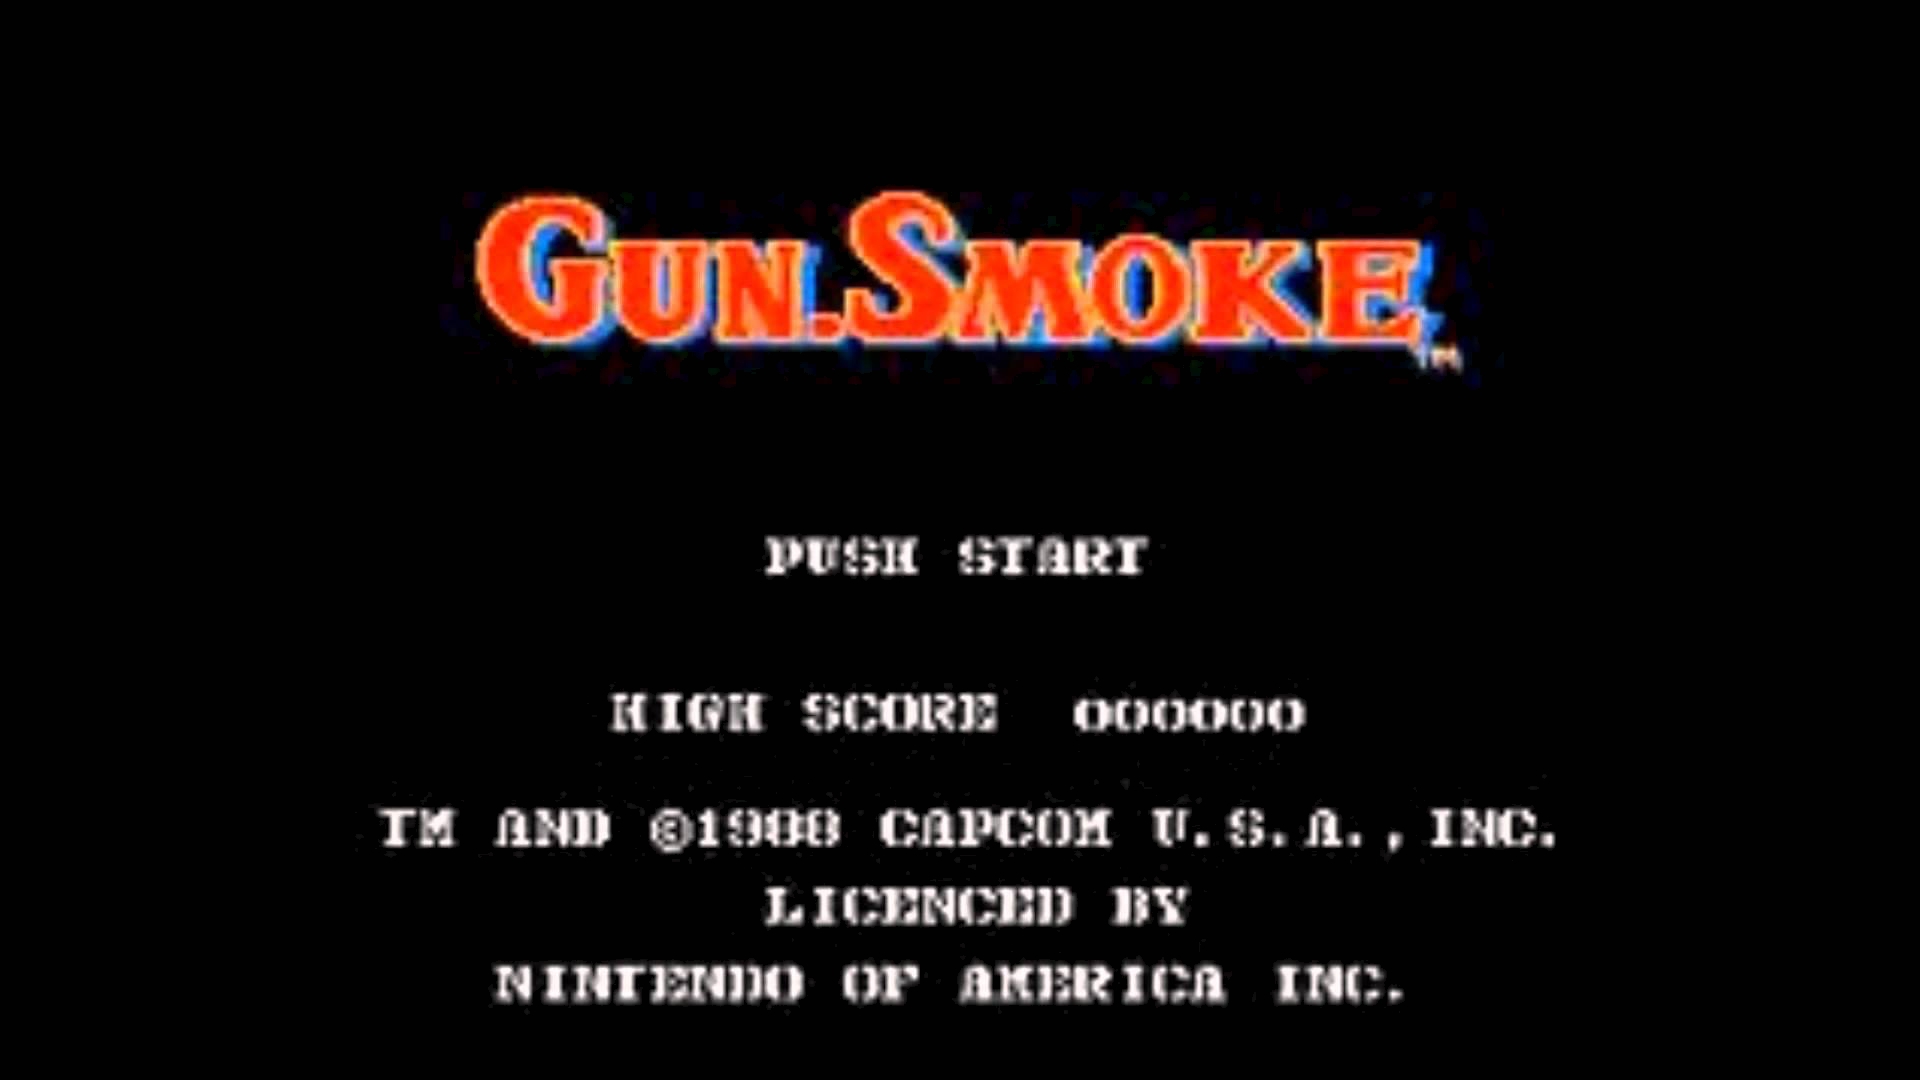 Video Game Gun Smoke HD Wallpaper | Background Image